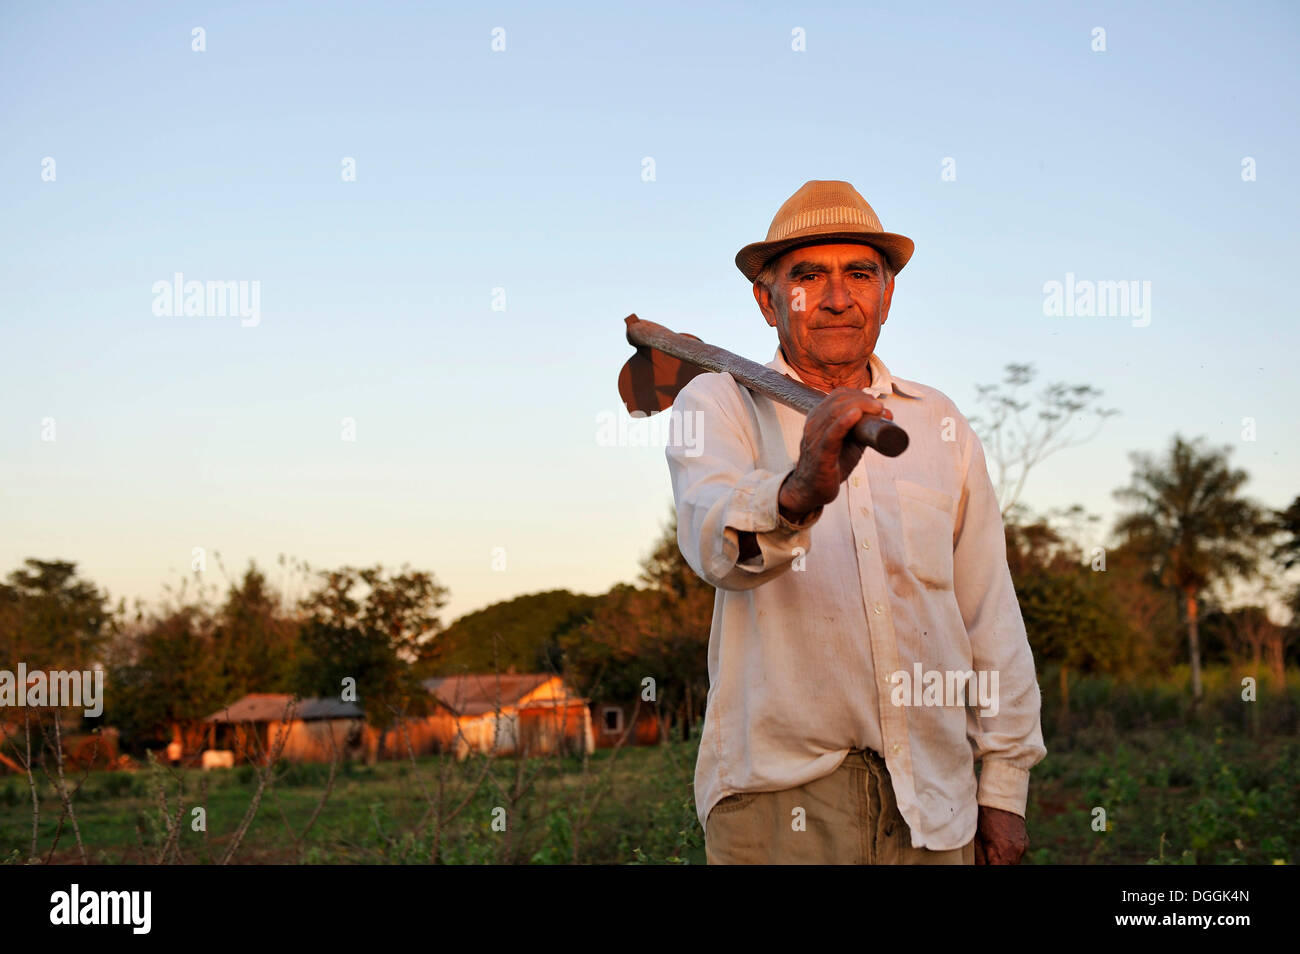 Campesino, de 70 años, de pie con una azada en un campo, pastoreo, departamento de Caaguazú, Paraguay Foto de stock